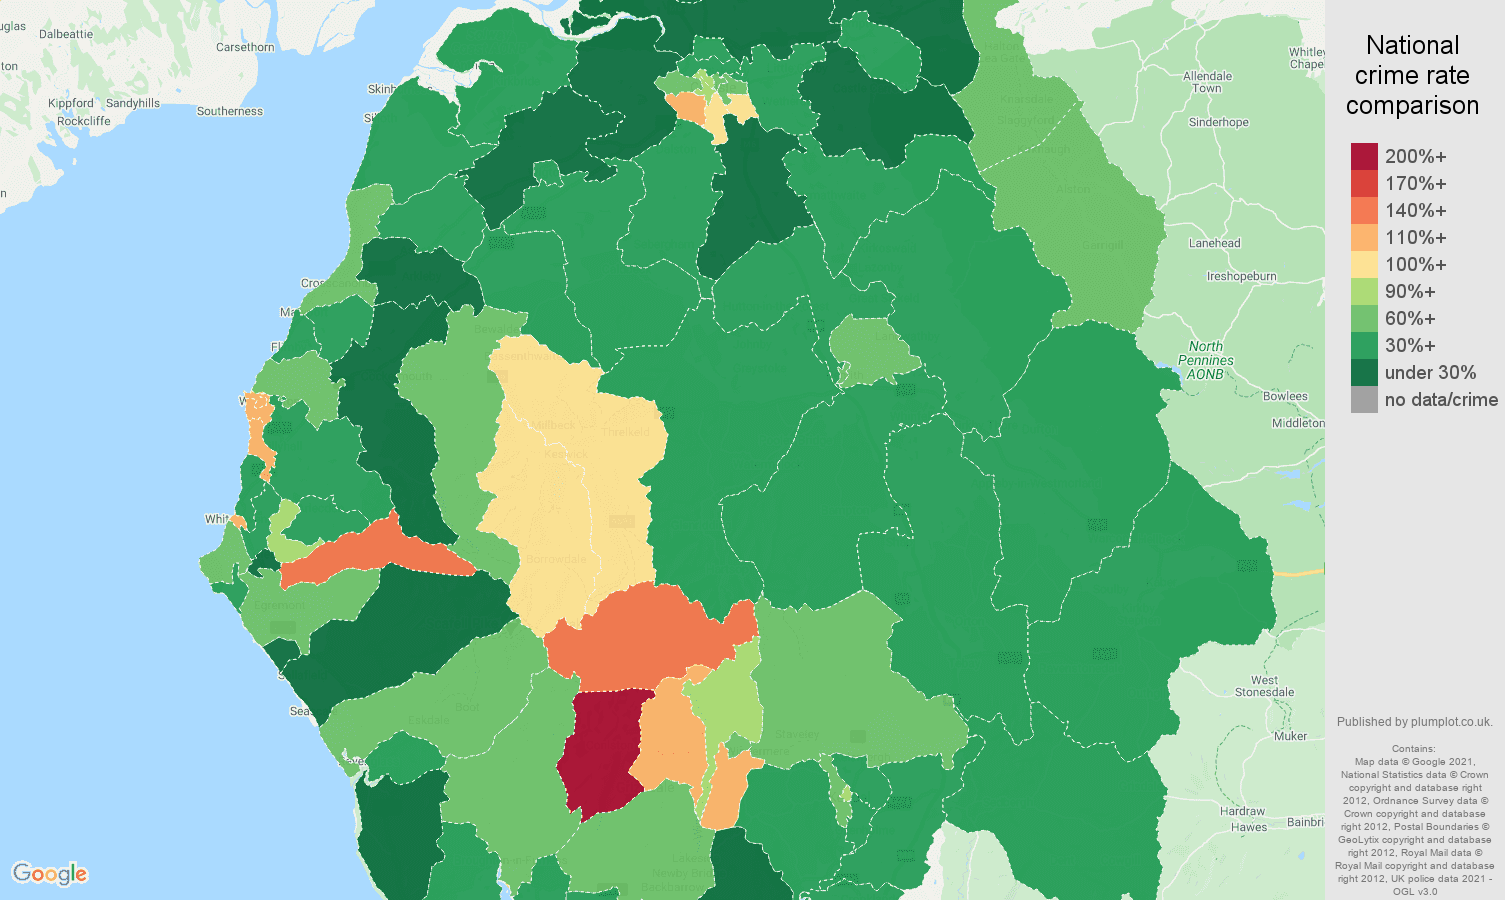 Cumbria antisocial behaviour crime rate comparison map